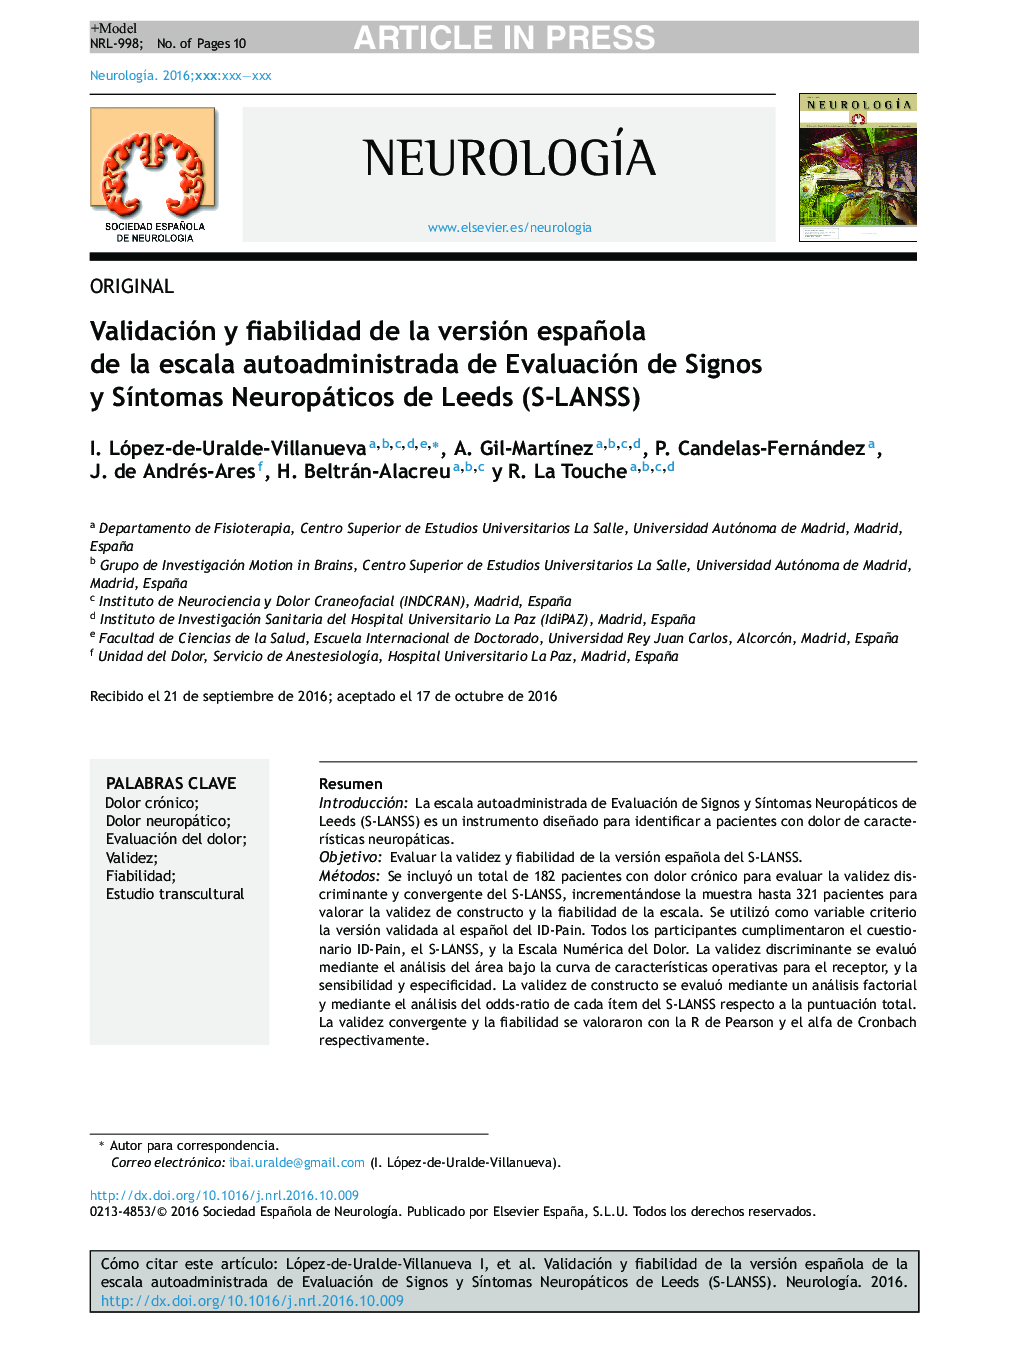 Validación y fiabilidad de la versión española de la escala autoadministrada de Evaluación de Signos y SÃ­ntomas Neuropáticos de Leeds (S-LANSS)